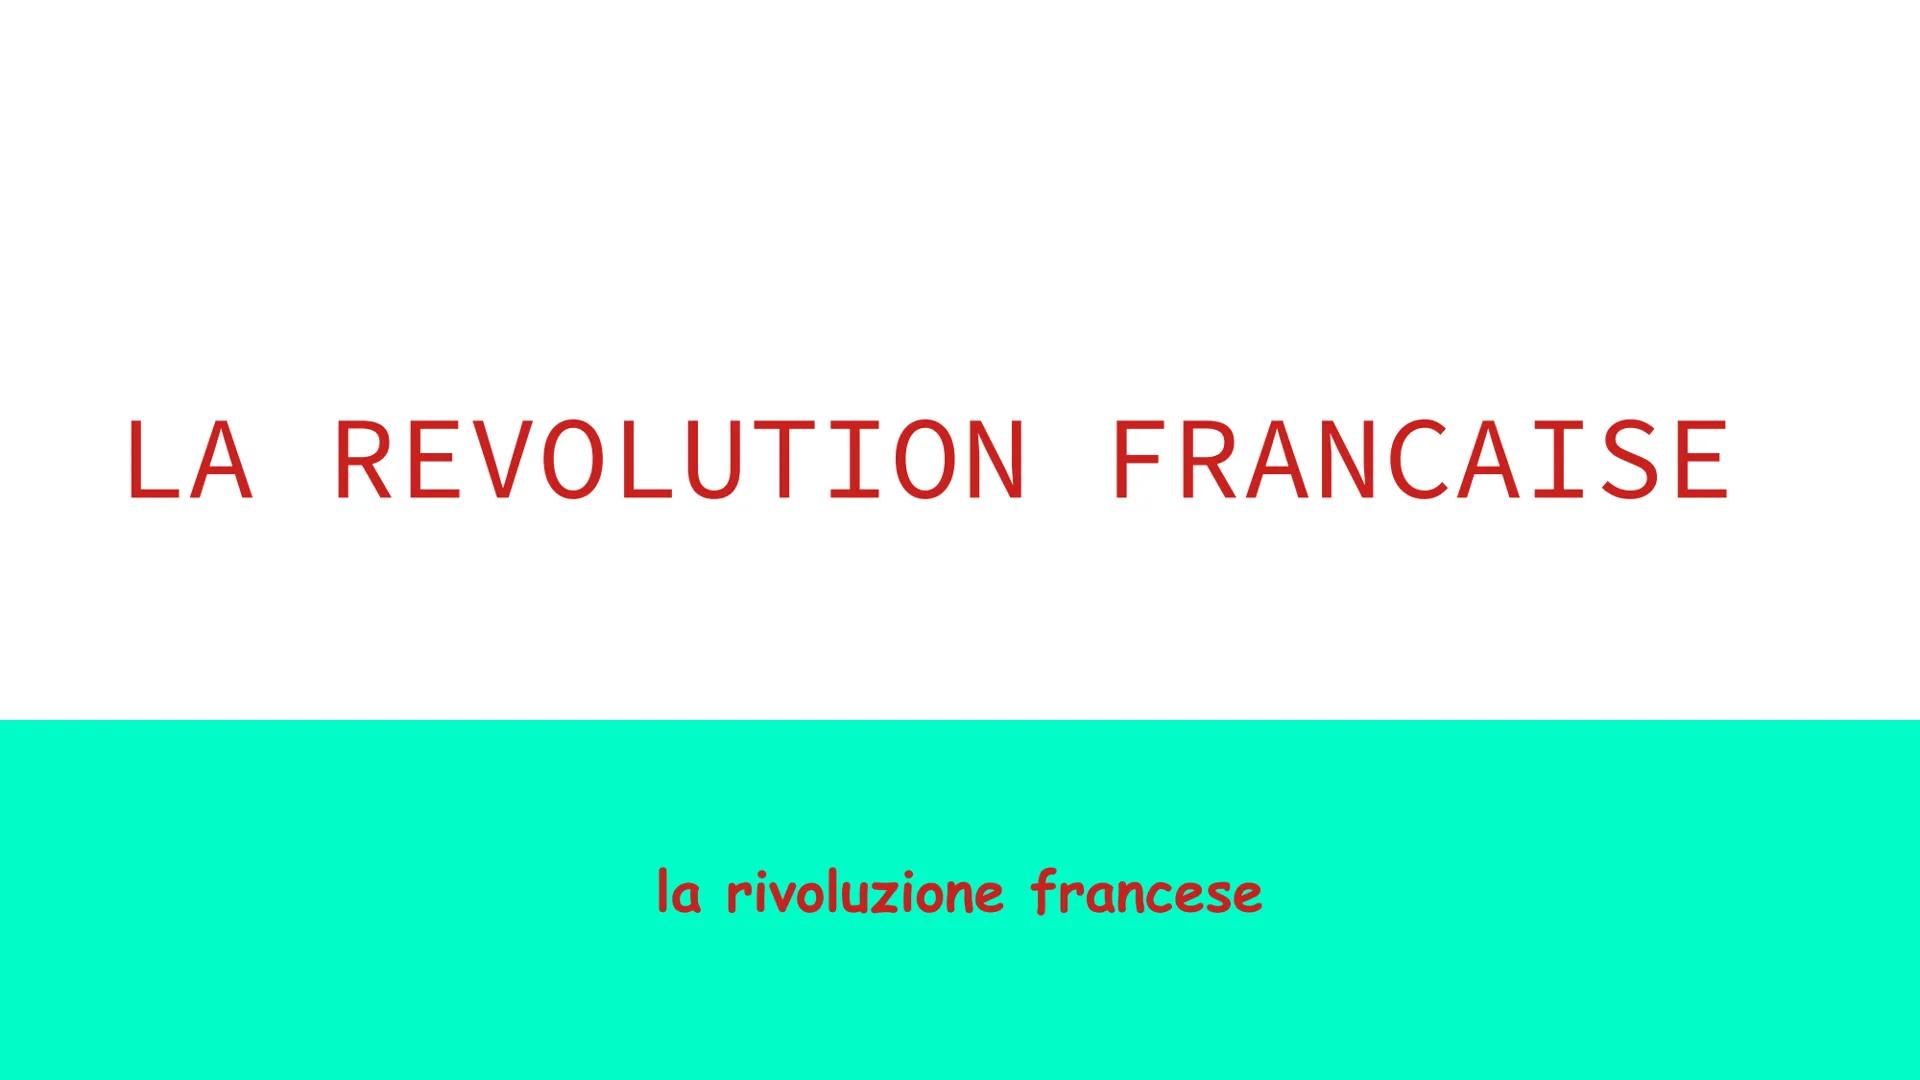 LA REVOLUTION FRANCAISE
la rivoluzione francese La Rivoluzione francese fu un periodo politico e
culturale prevalentemente violento, avvenut